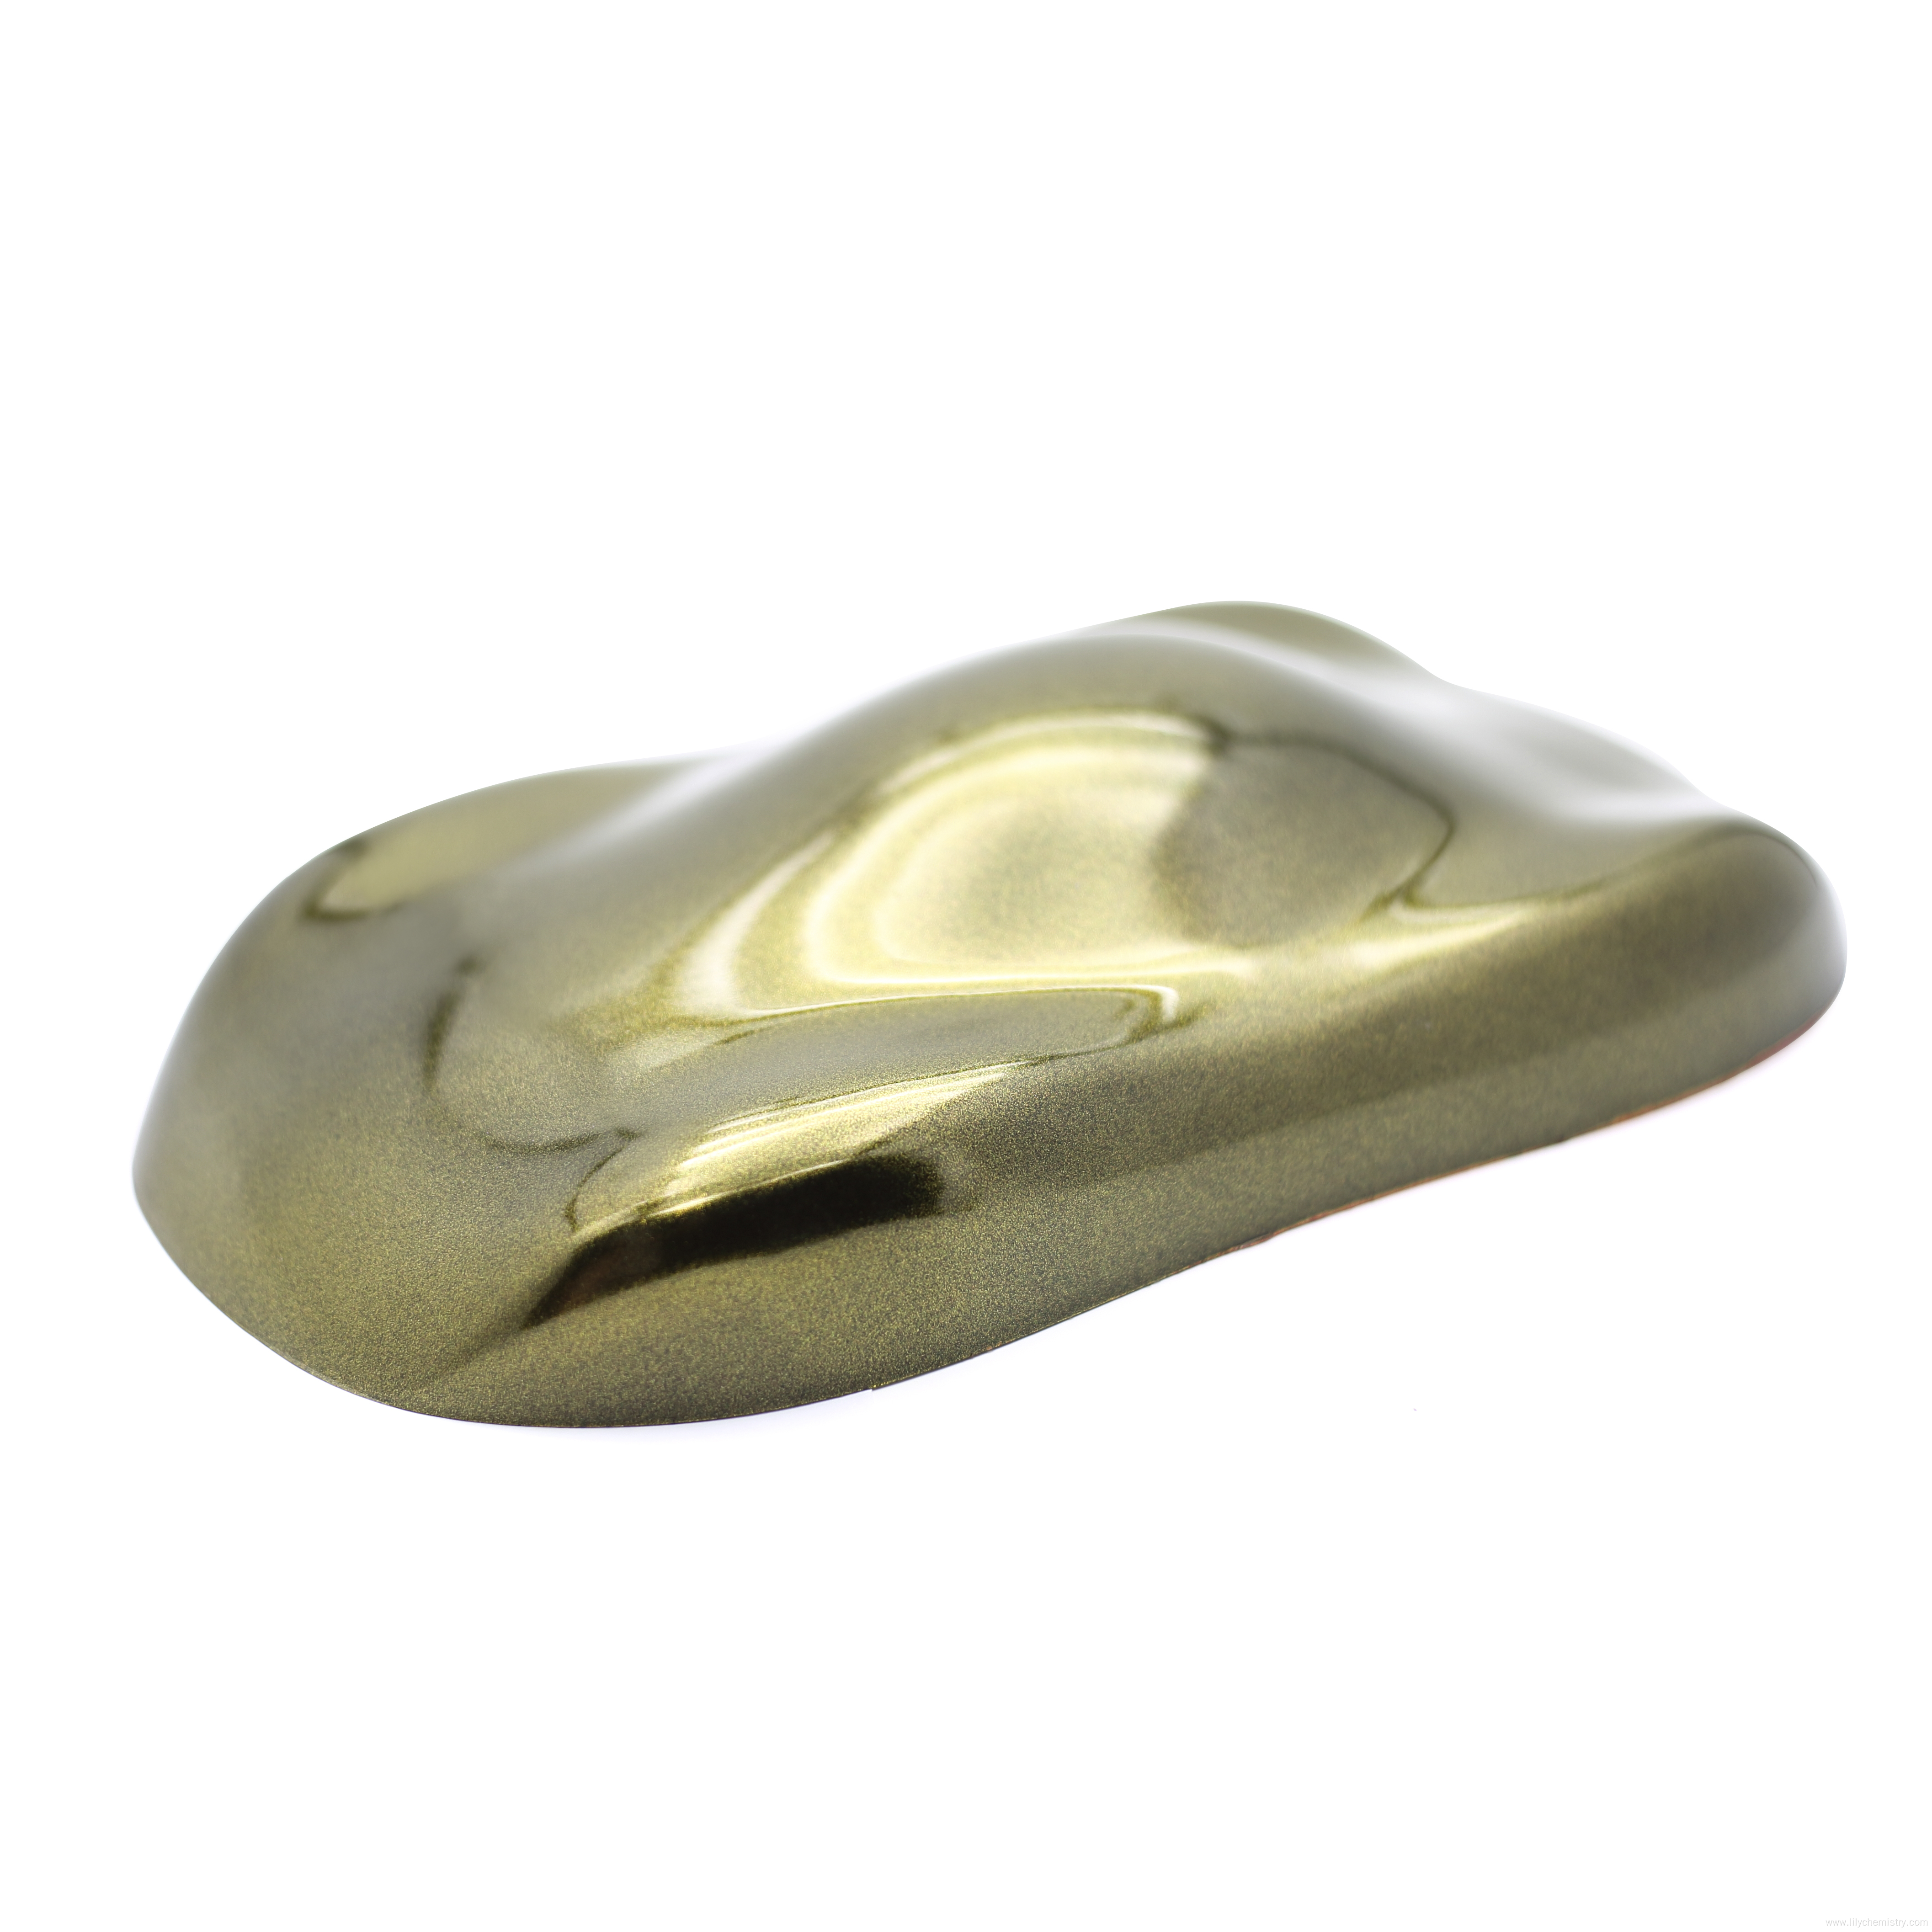 Buena calidad hacia adelante d21l pigmento de perla de oro flash